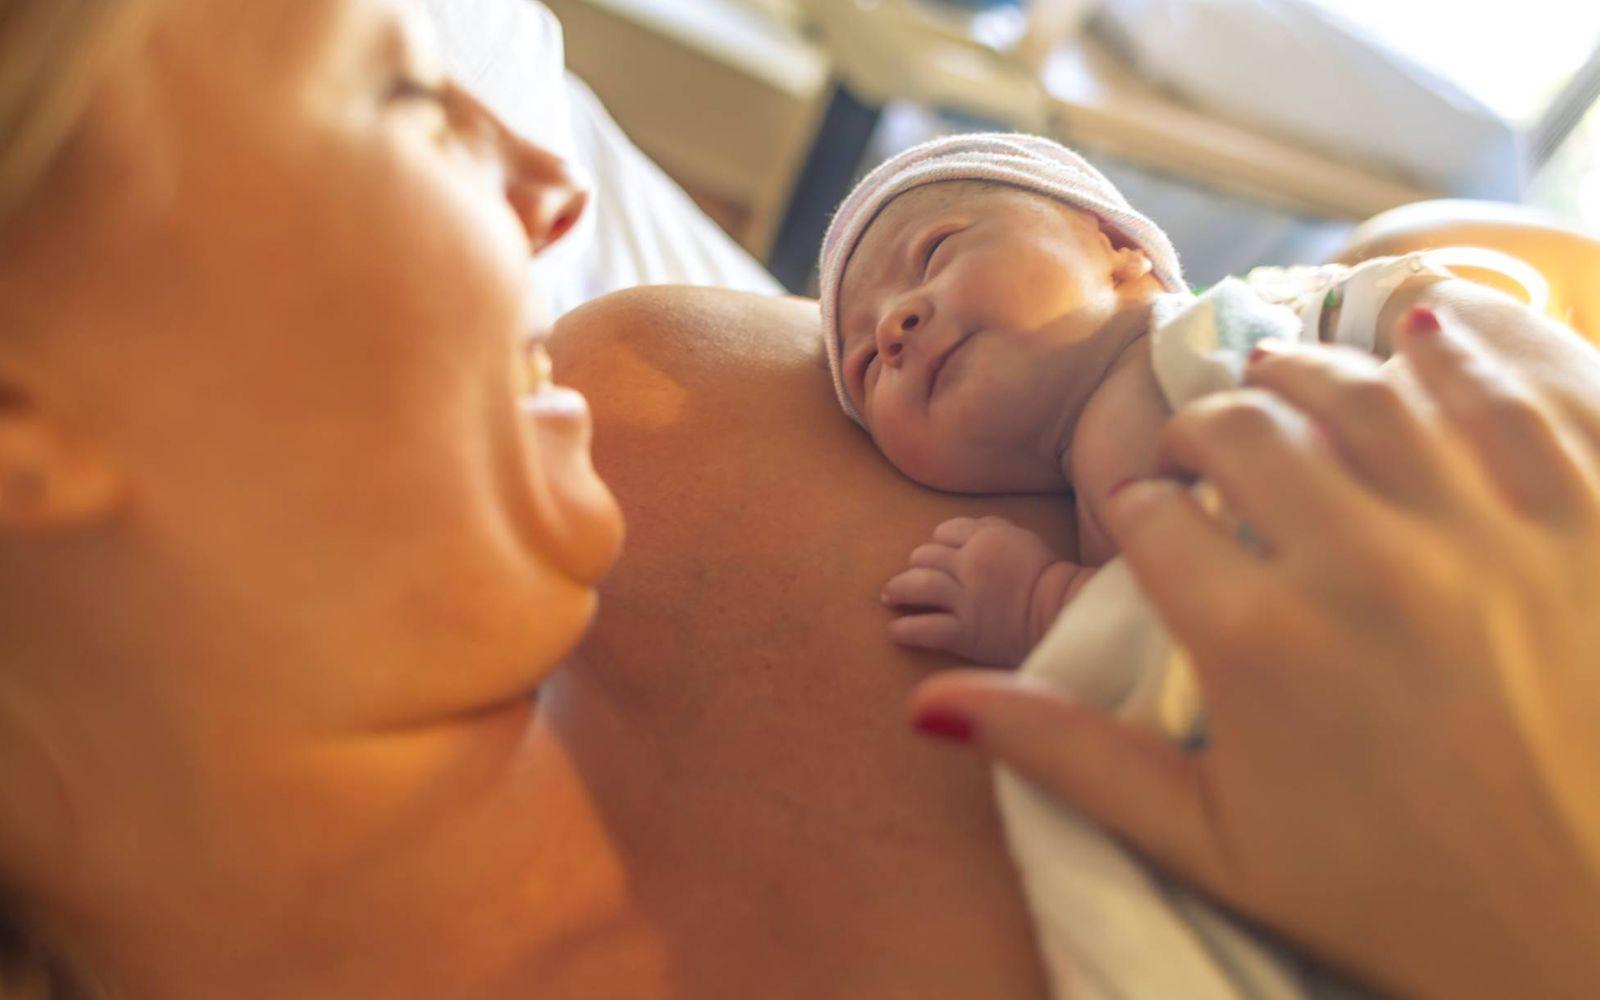 Symbolbild Bonding: Mutter hält Neugeborenes